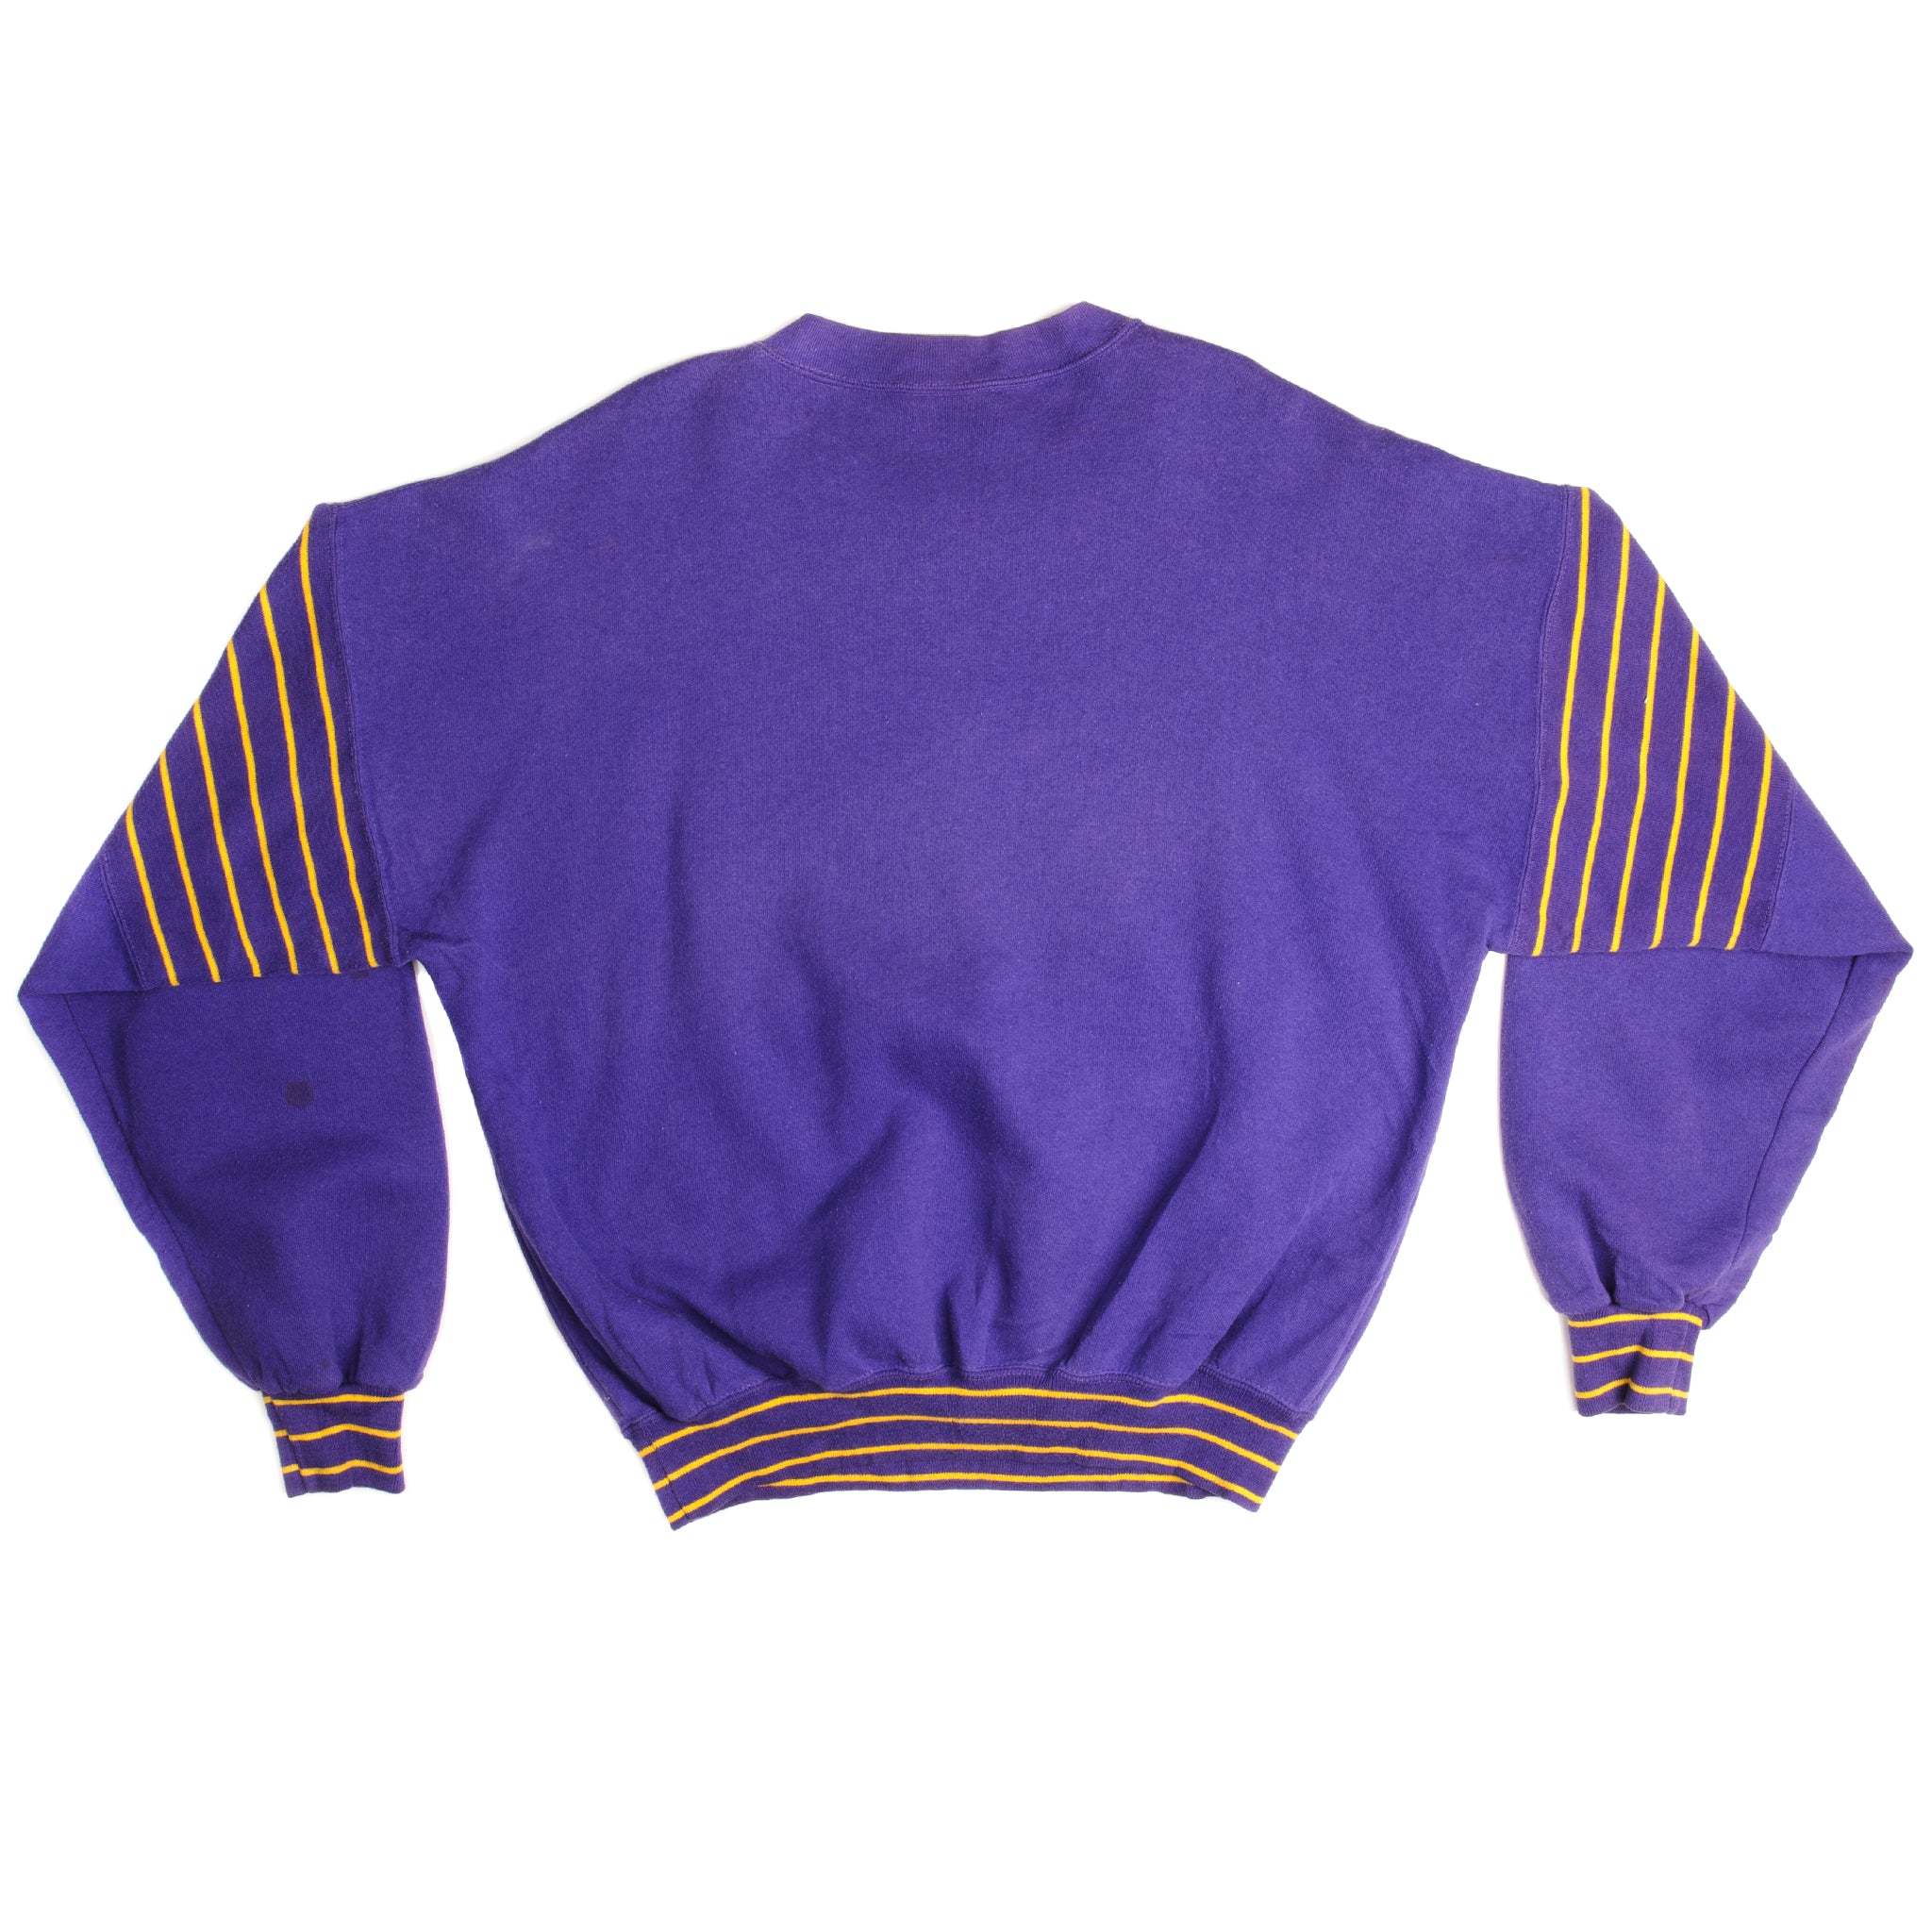 Vintage Nike NBA Los Angeles Lakers Hoodie Sweatshirt Size XL 1990s